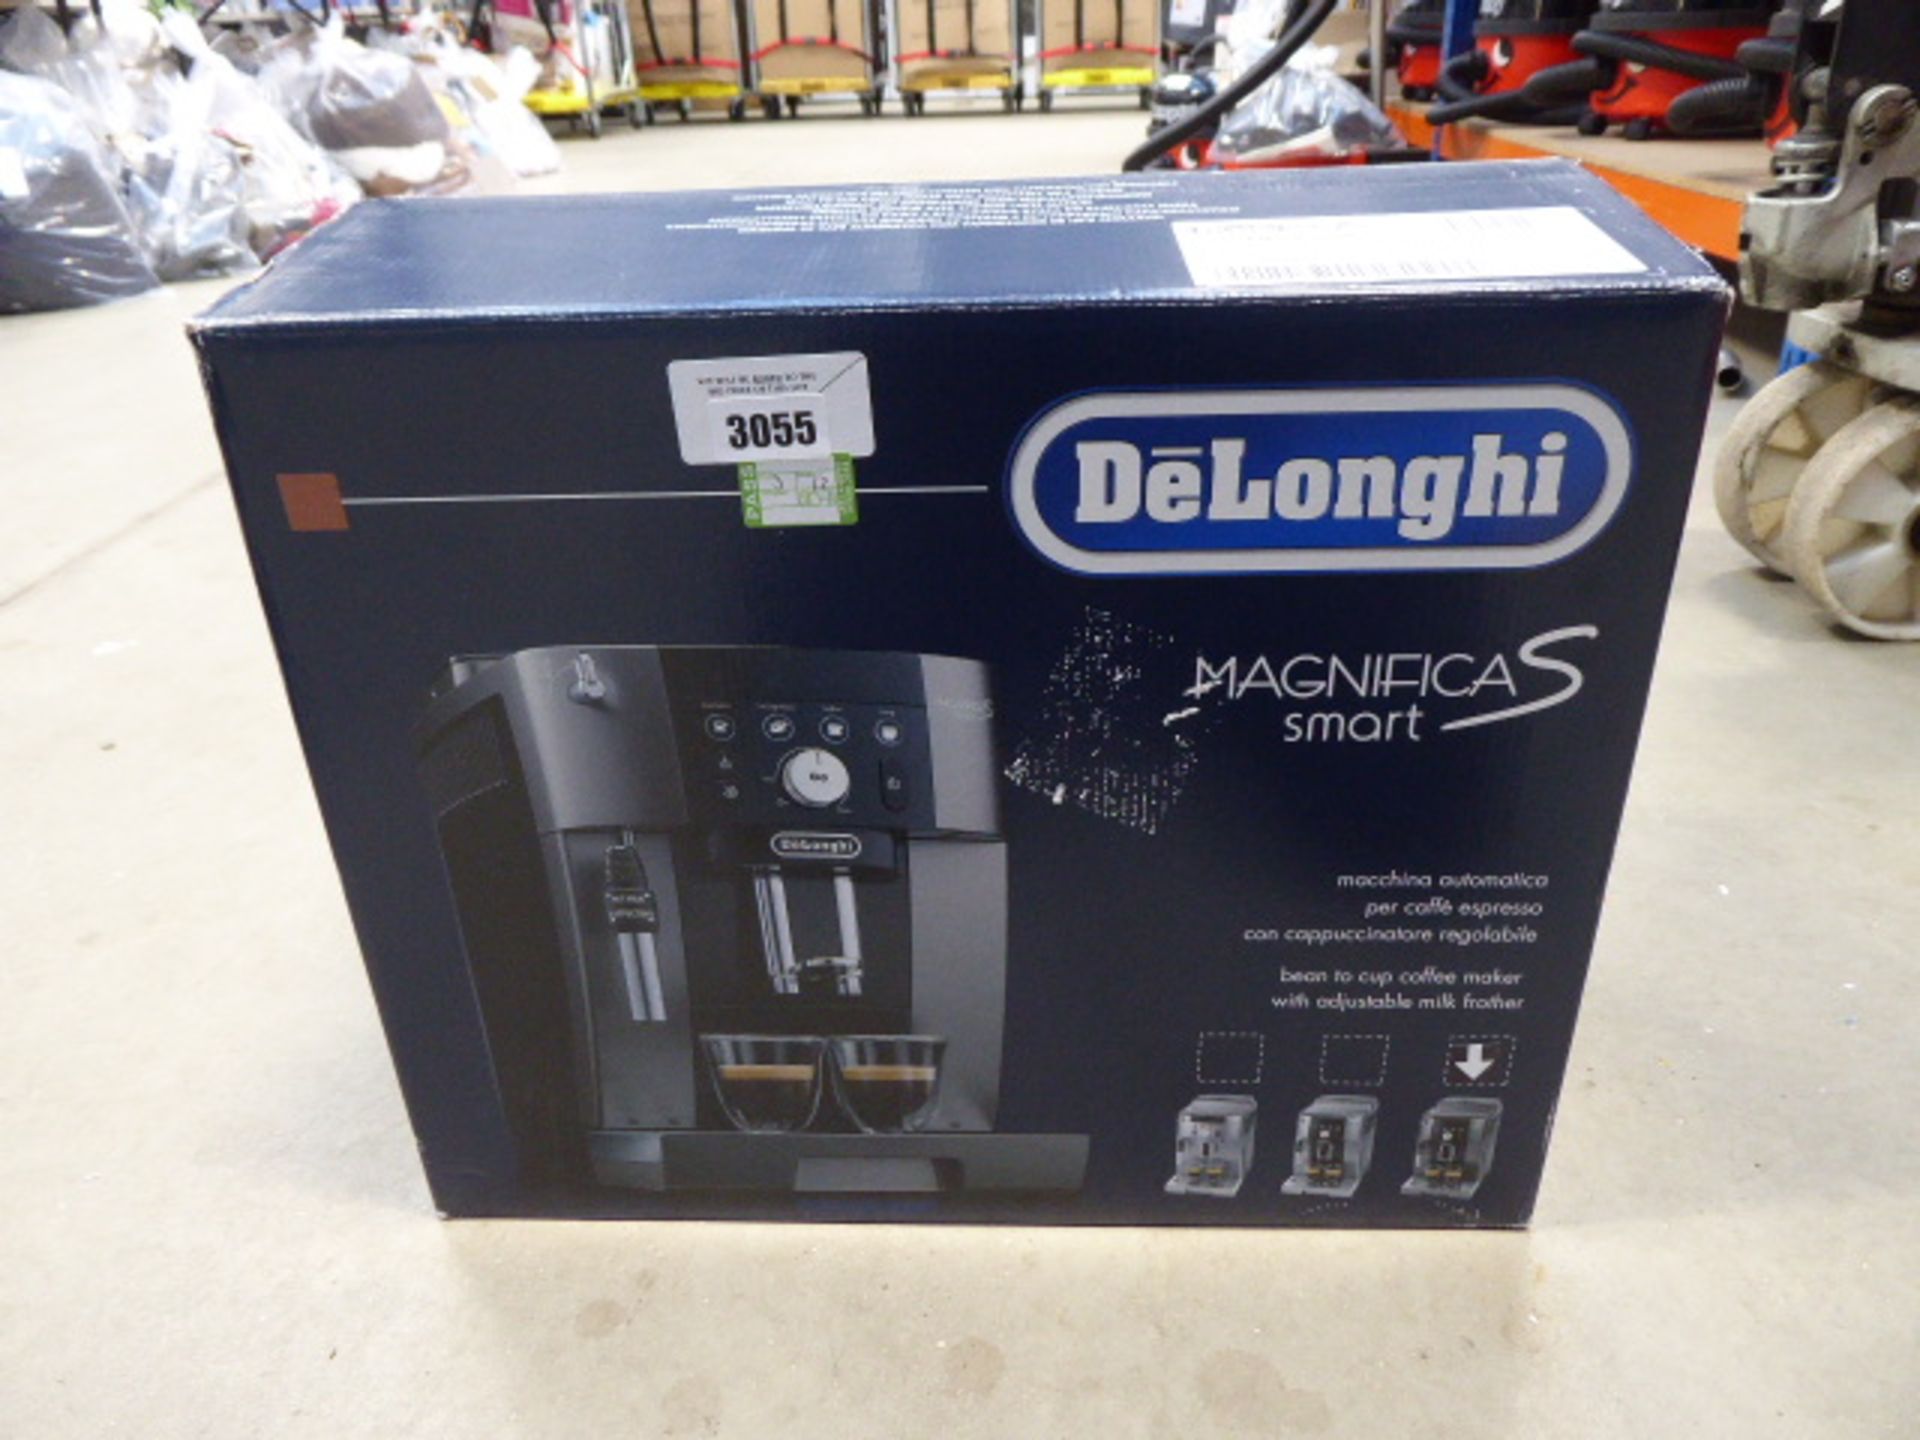 (TN214) Boxed De'Longhi Magnifica smart coffee machine